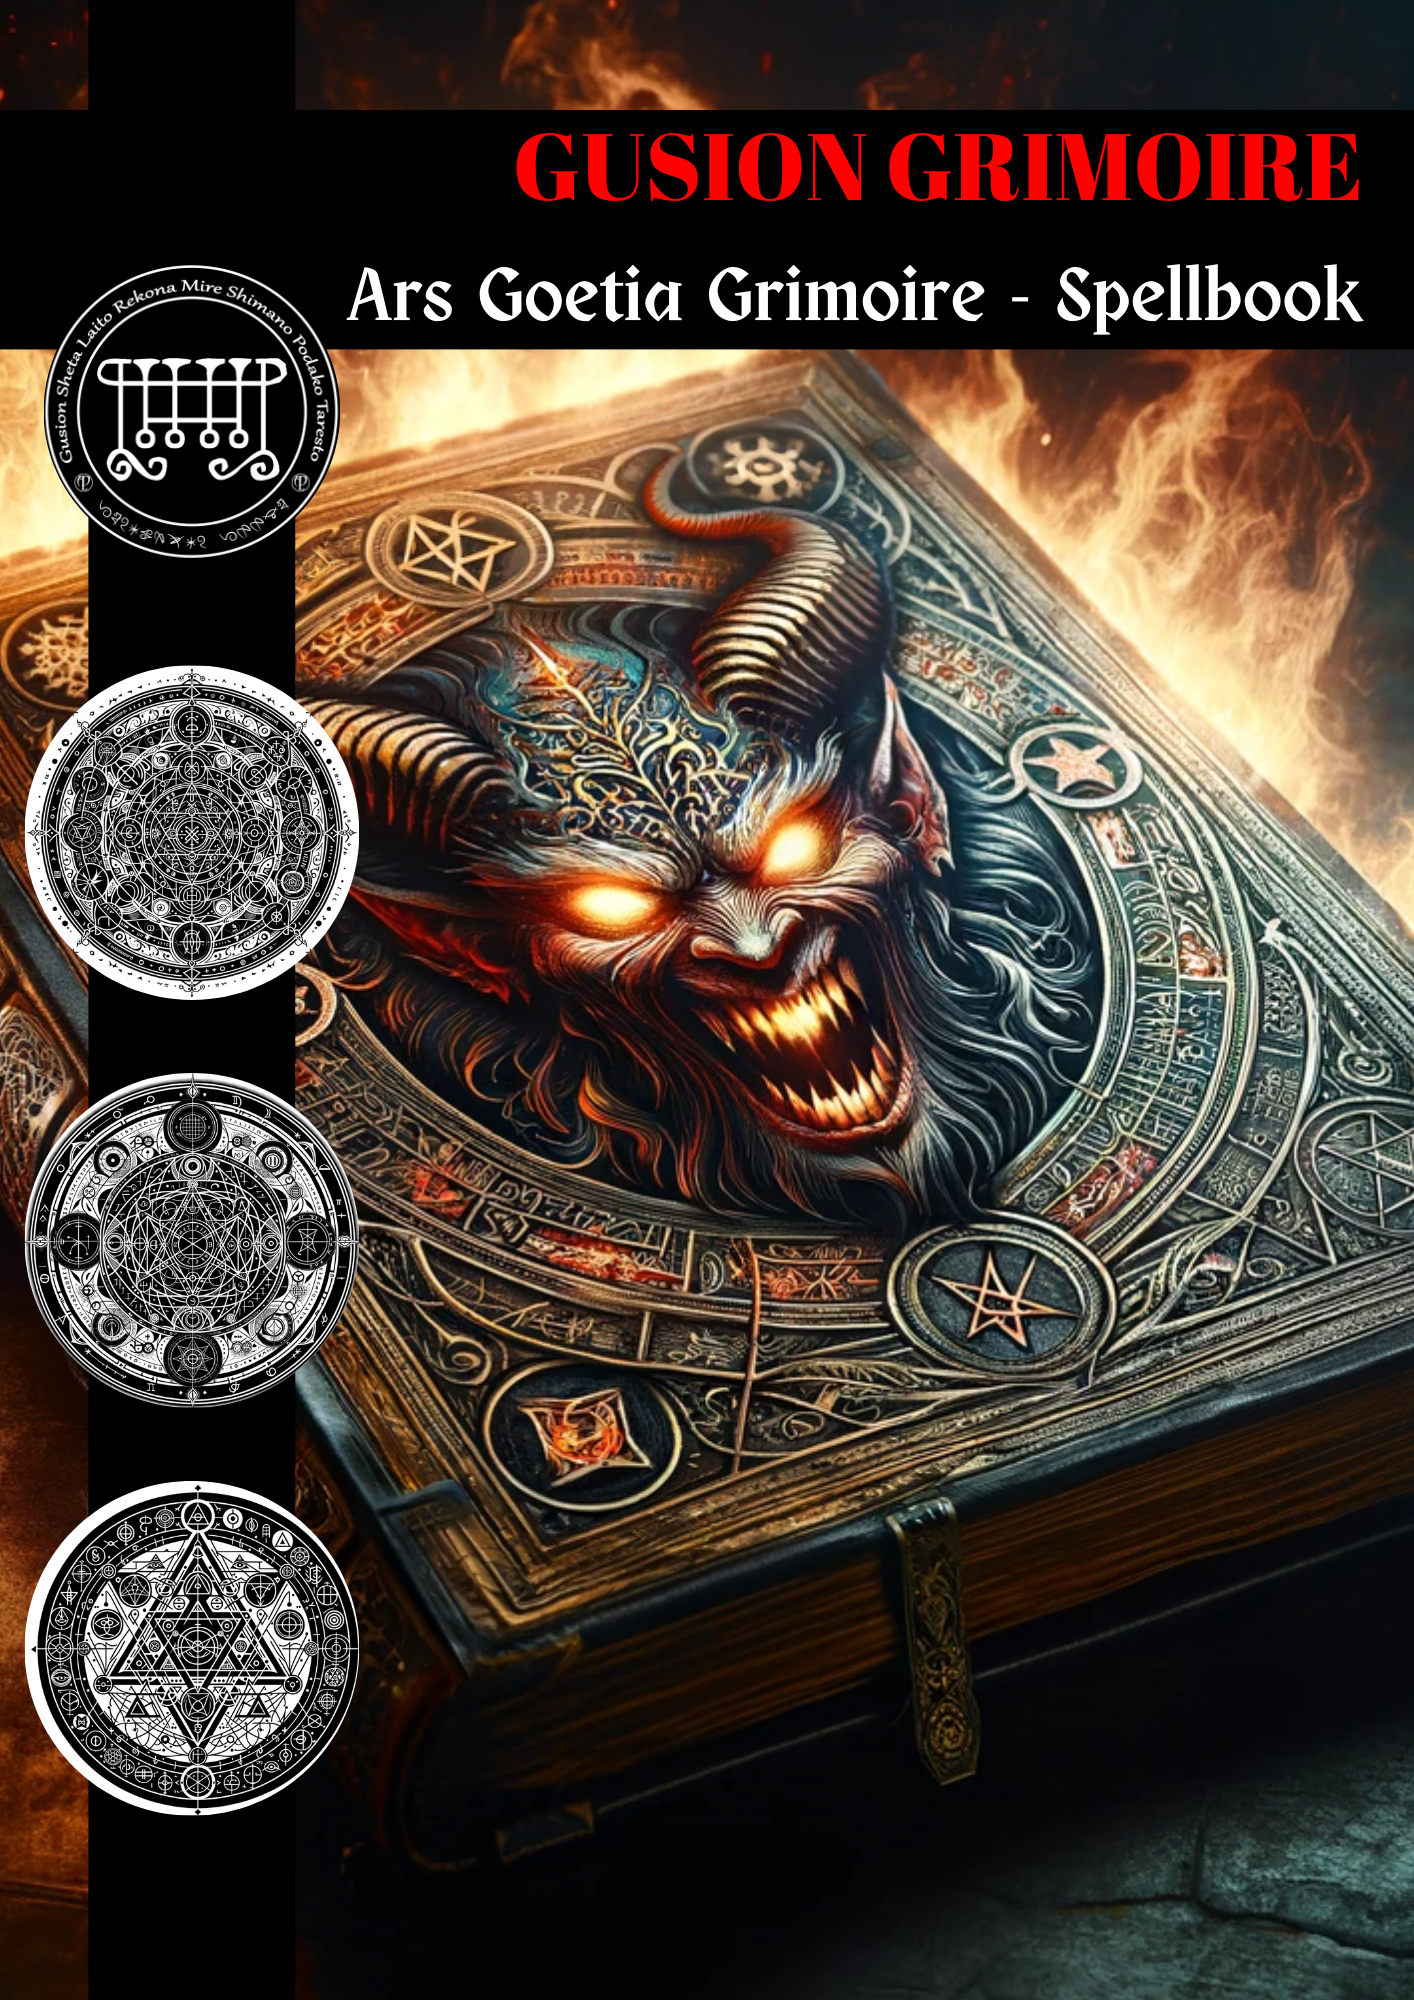 Grimorio de Gusion Hechizos y Rituales para el desarrollo interior - Abraxas Amuletos ® Magia ♾️ Talismanes ♾️ Iniciaciones